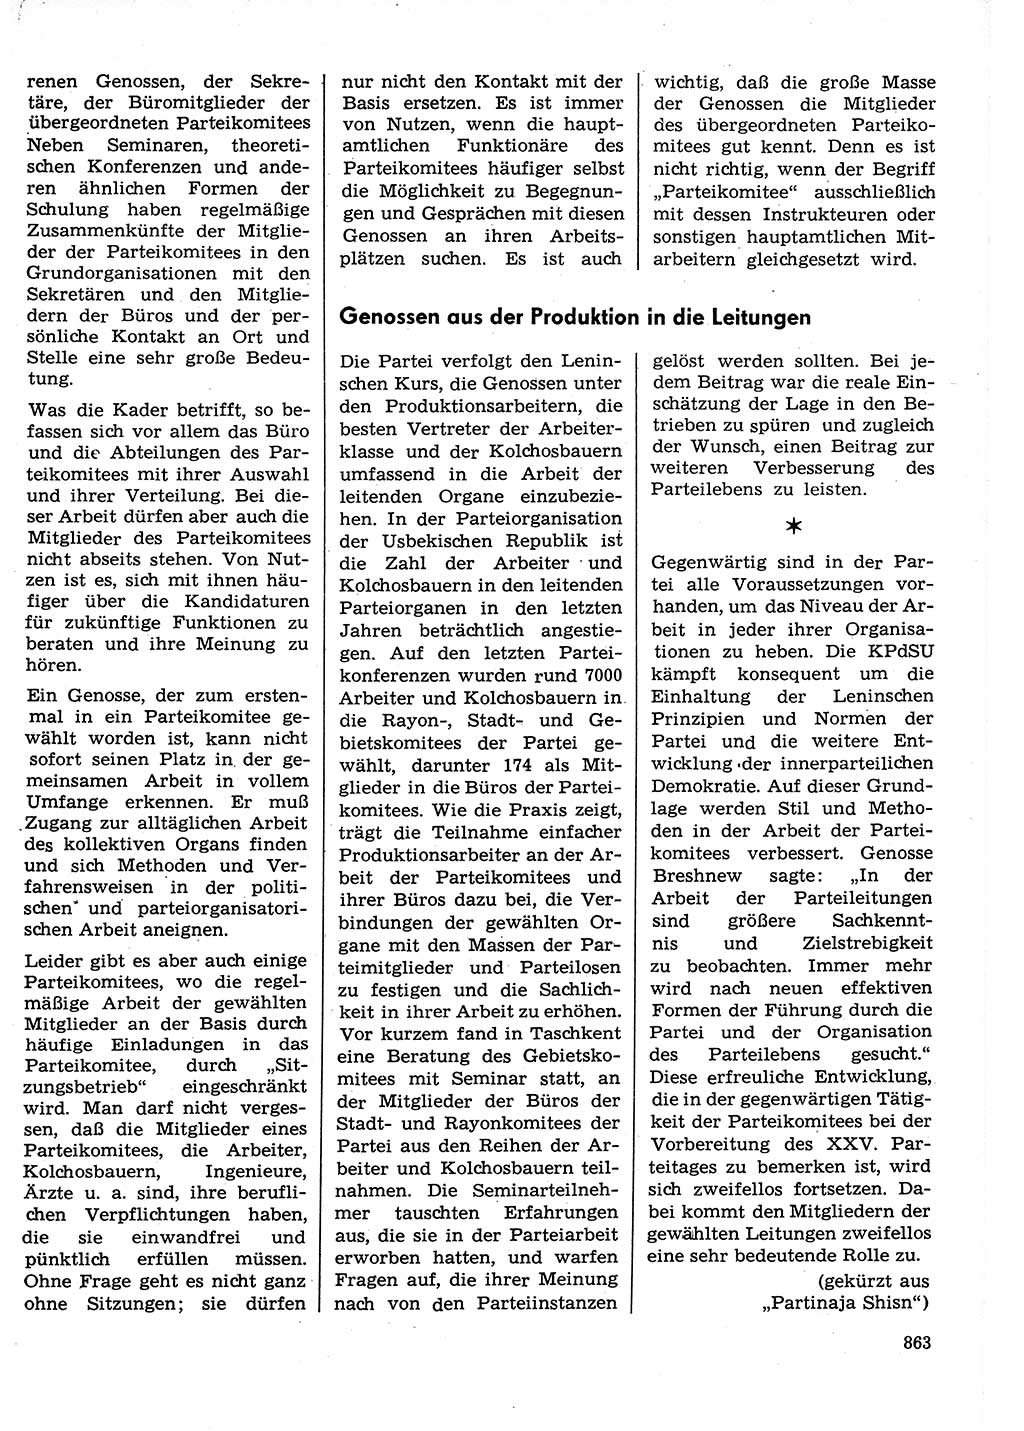 Neuer Weg (NW), Organ des Zentralkomitees (ZK) der SED (Sozialistische Einheitspartei Deutschlands) für Fragen des Parteilebens, 30. Jahrgang [Deutsche Demokratische Republik (DDR)] 1975, Seite 863 (NW ZK SED DDR 1975, S. 863)